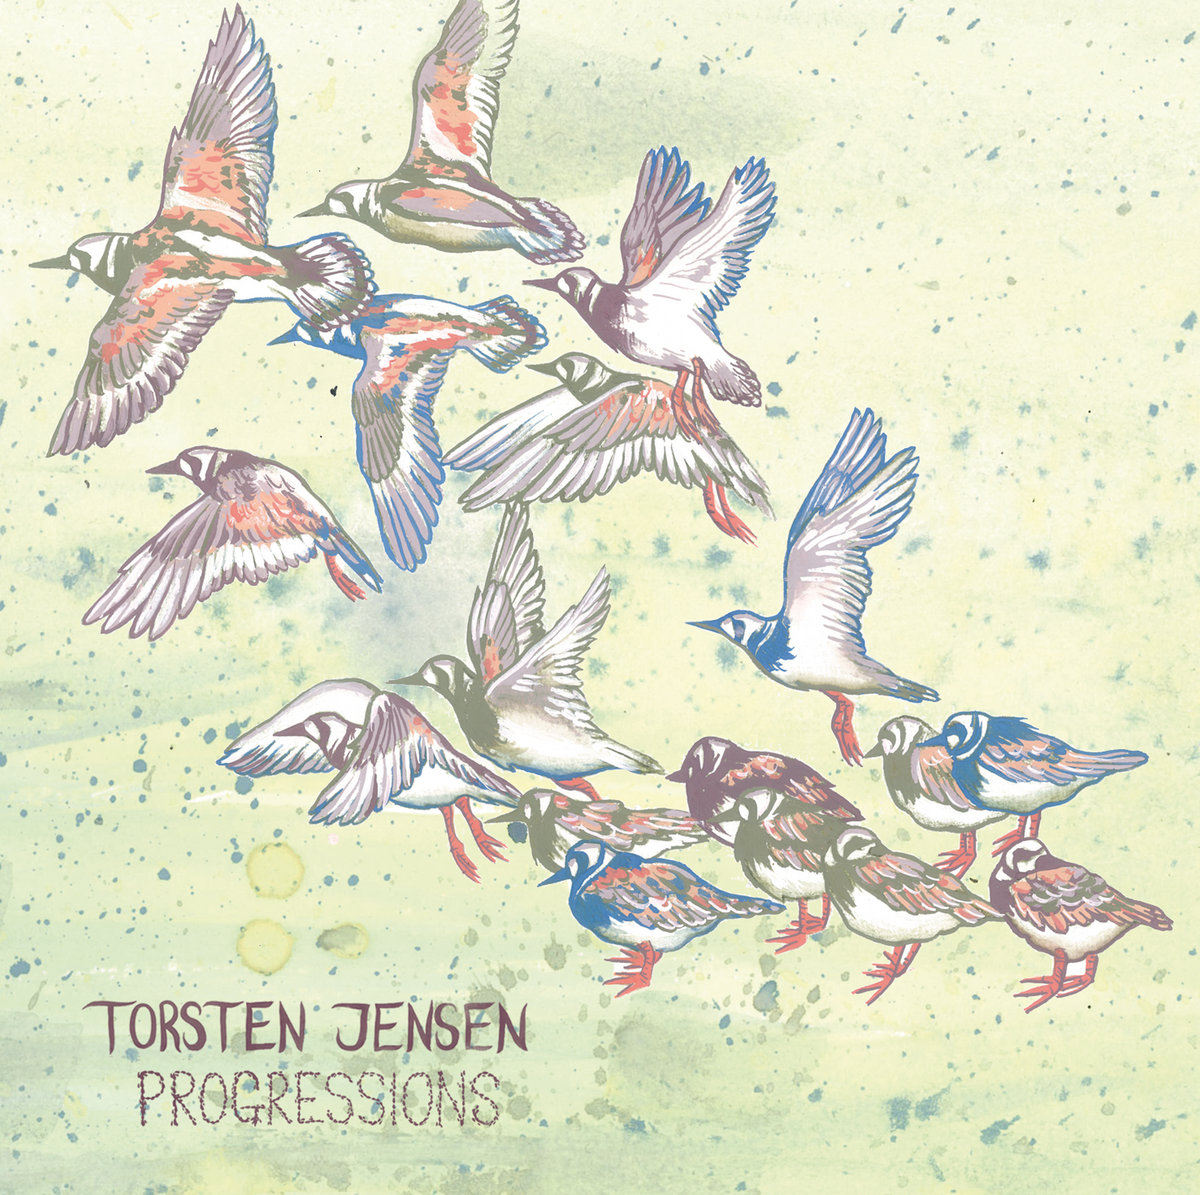 Cover art for Torsten Jensen's solo piano EP, "Progressions"